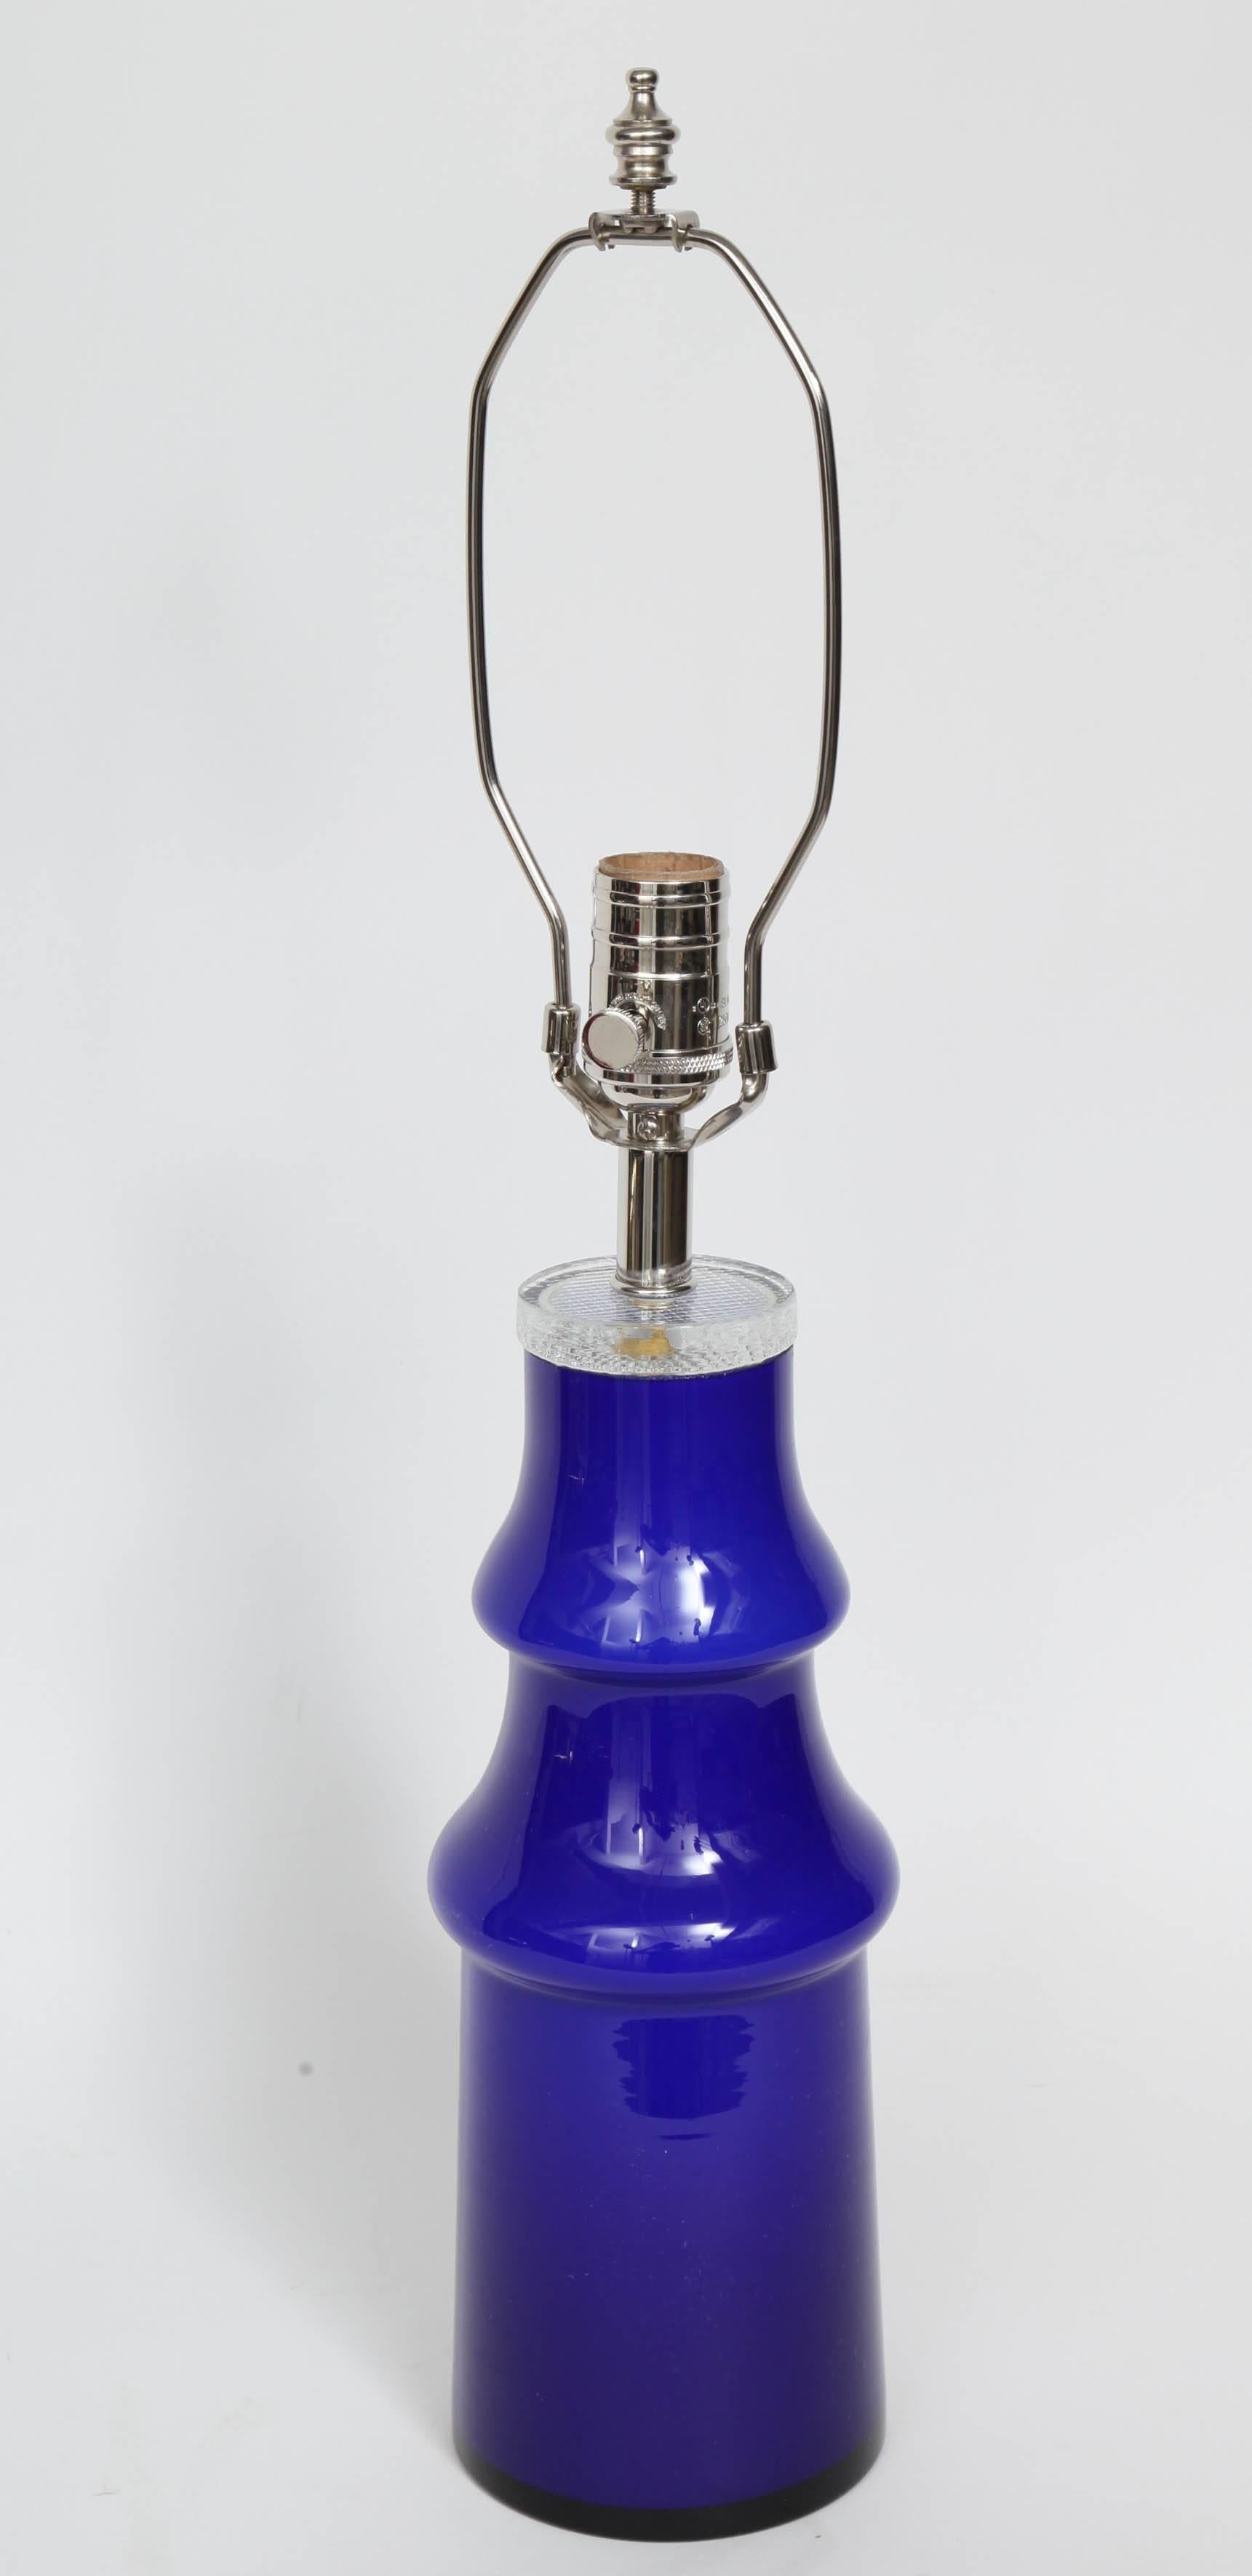 Schwedische moderne Kunstglaslampe in einem tiefen Blau. Die Lampe wurde für die USA neu verkabelt, mit Nickelarmaturen und klarem Kabel. 100W max Glühbirne. Schirm nicht enthalten.